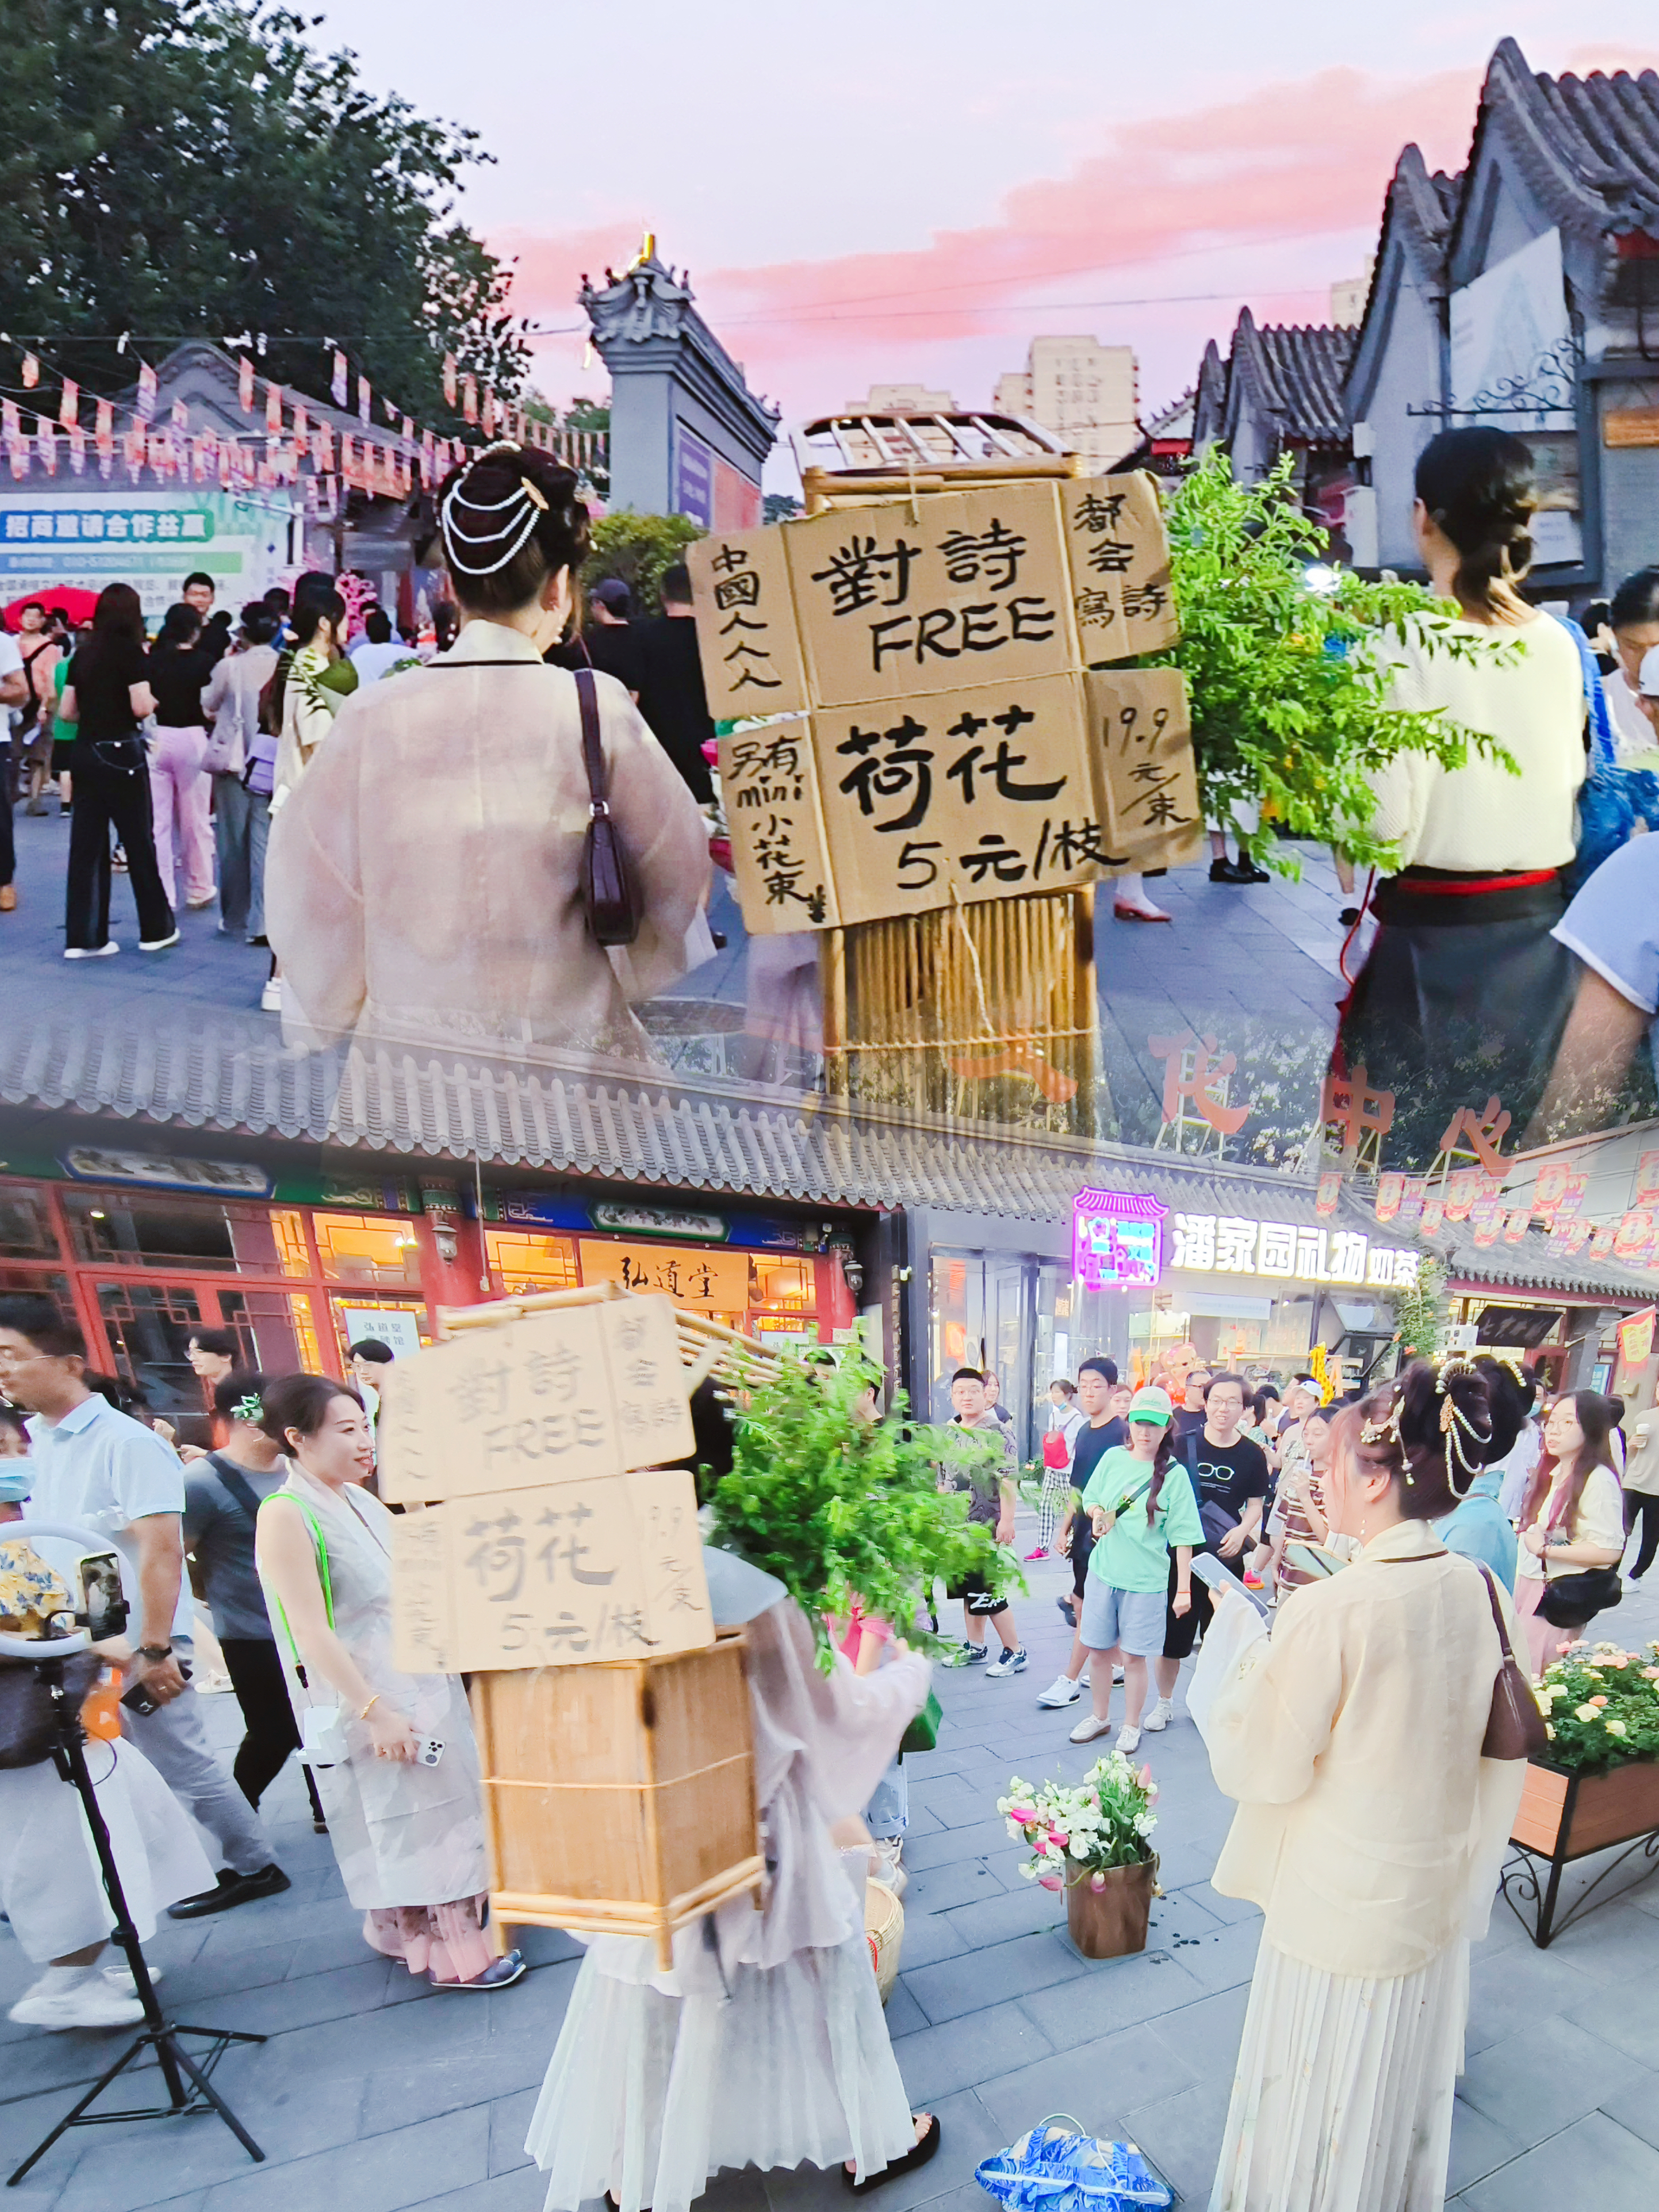 身着汉服的女孩在北京街头卖荷花。  /中国环球电视网